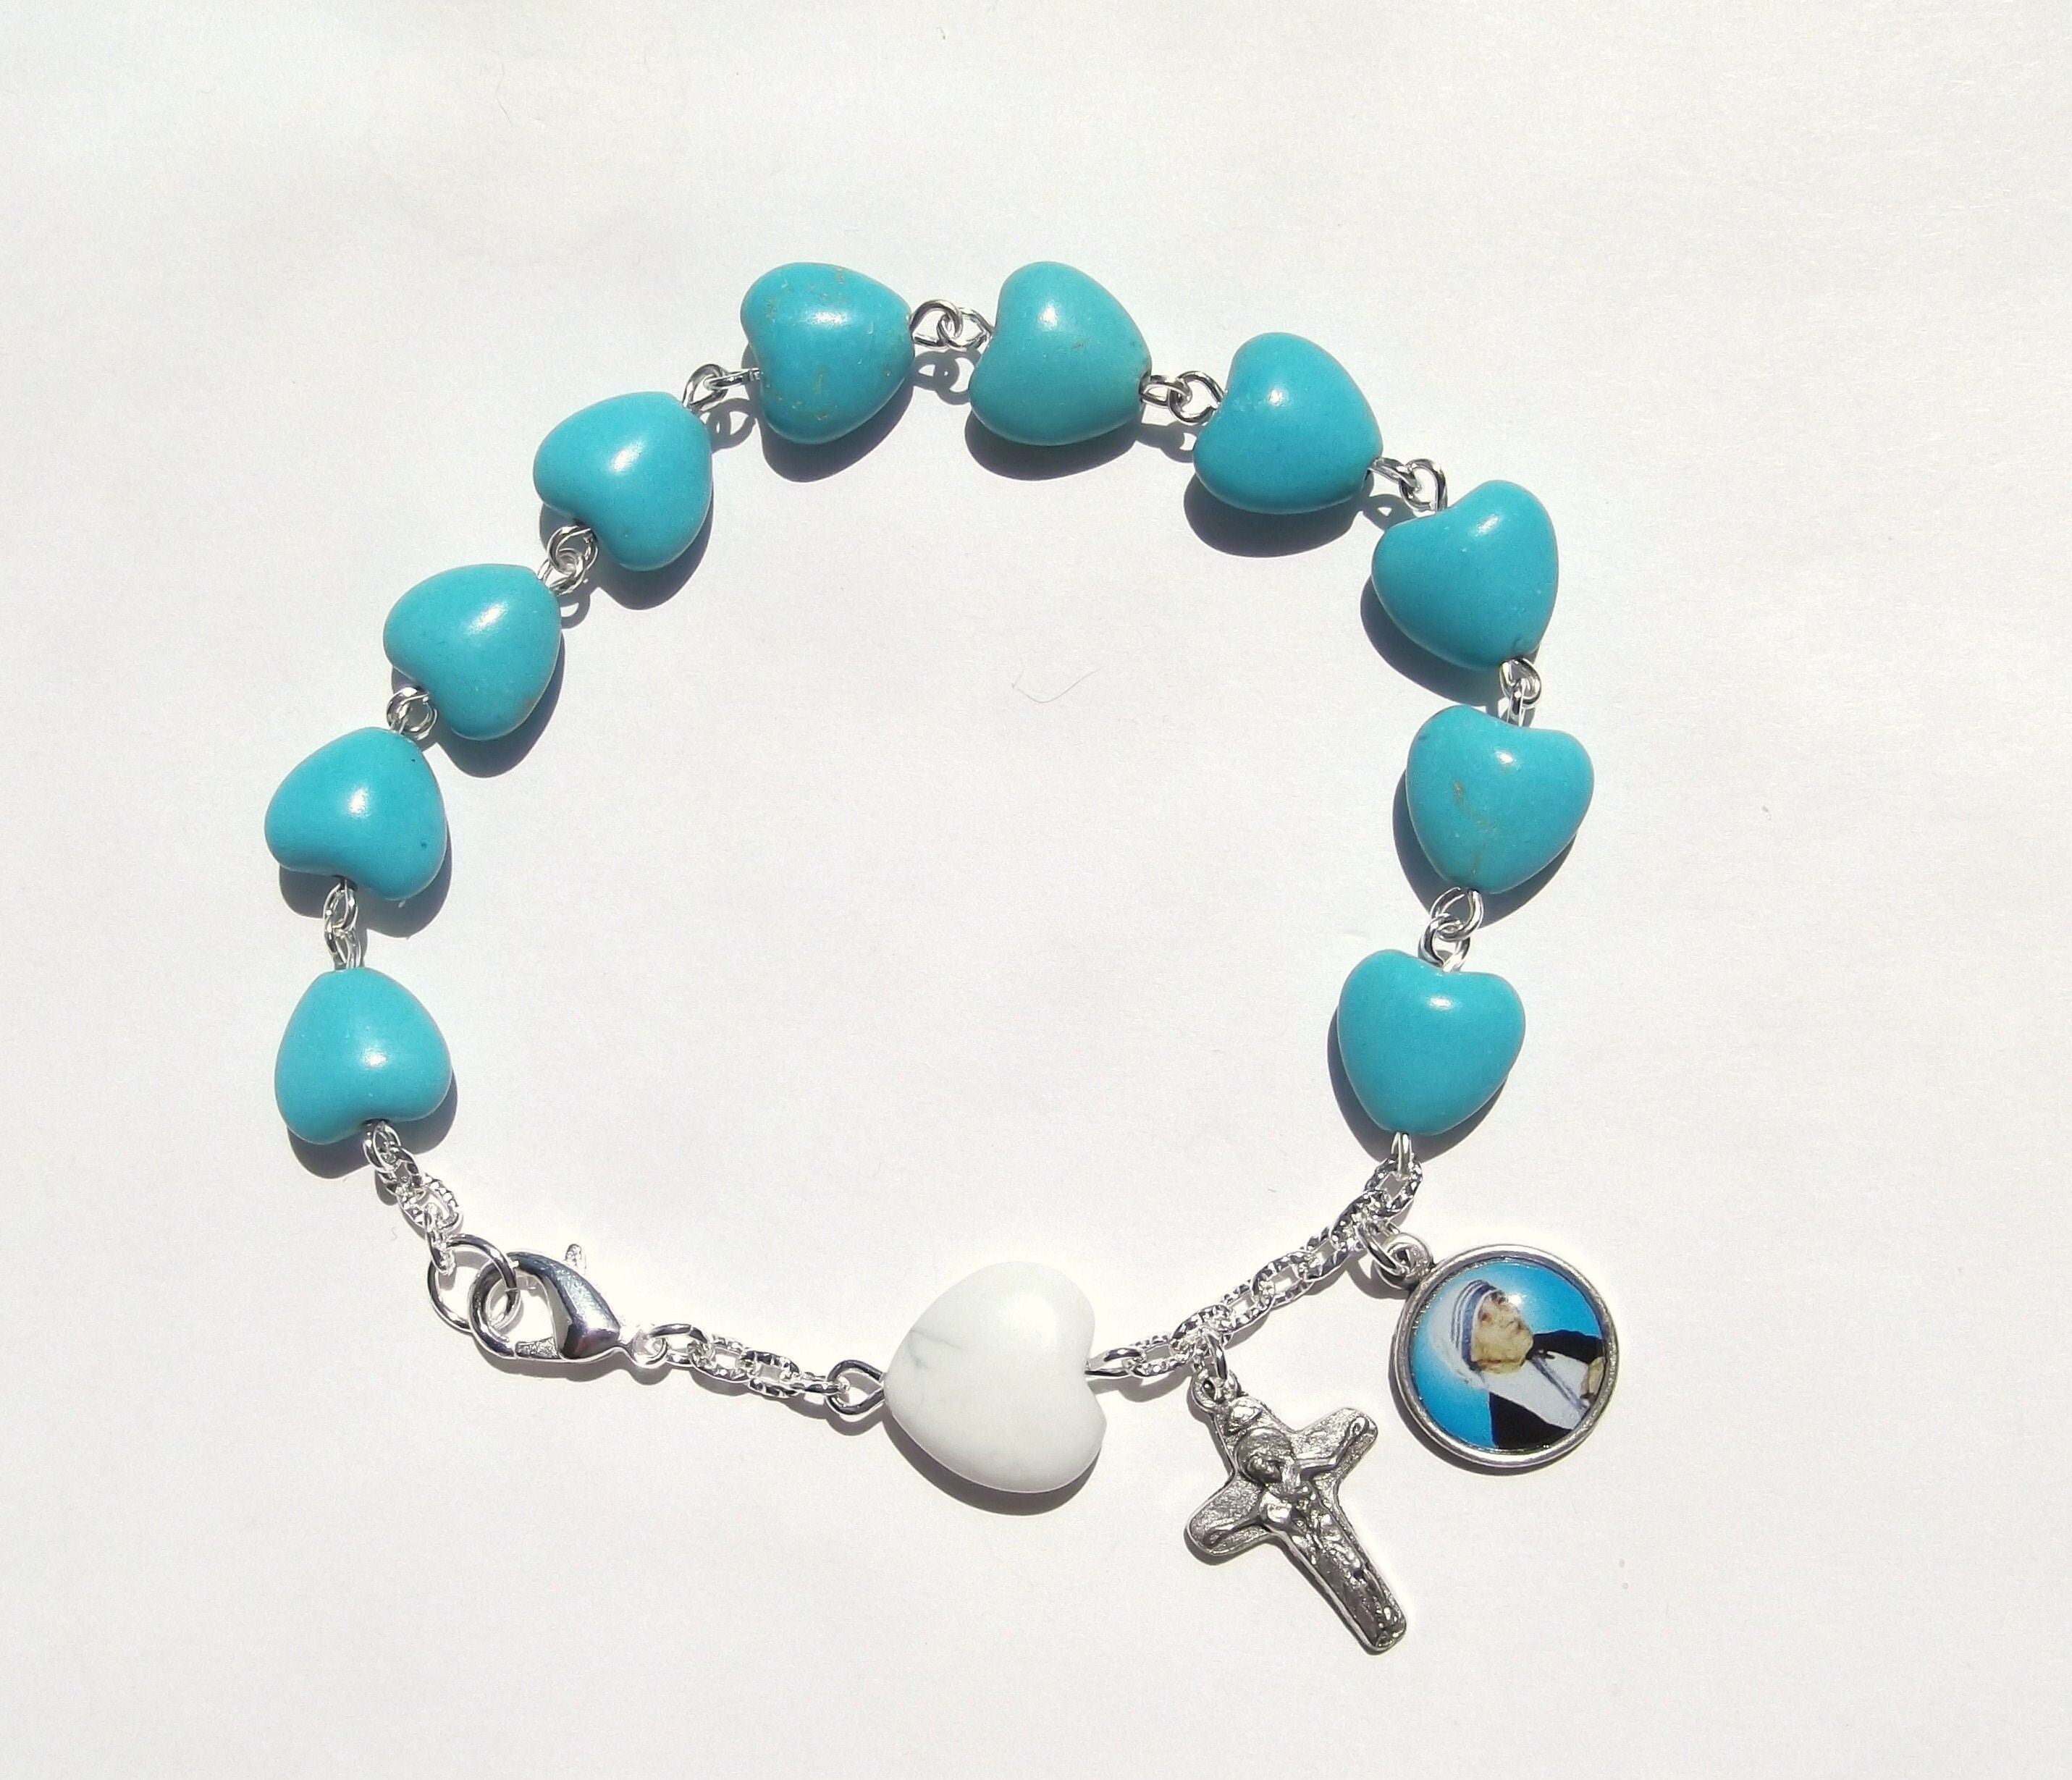 catholic rosary bracelet turquoise cross beaded| Alibaba.com